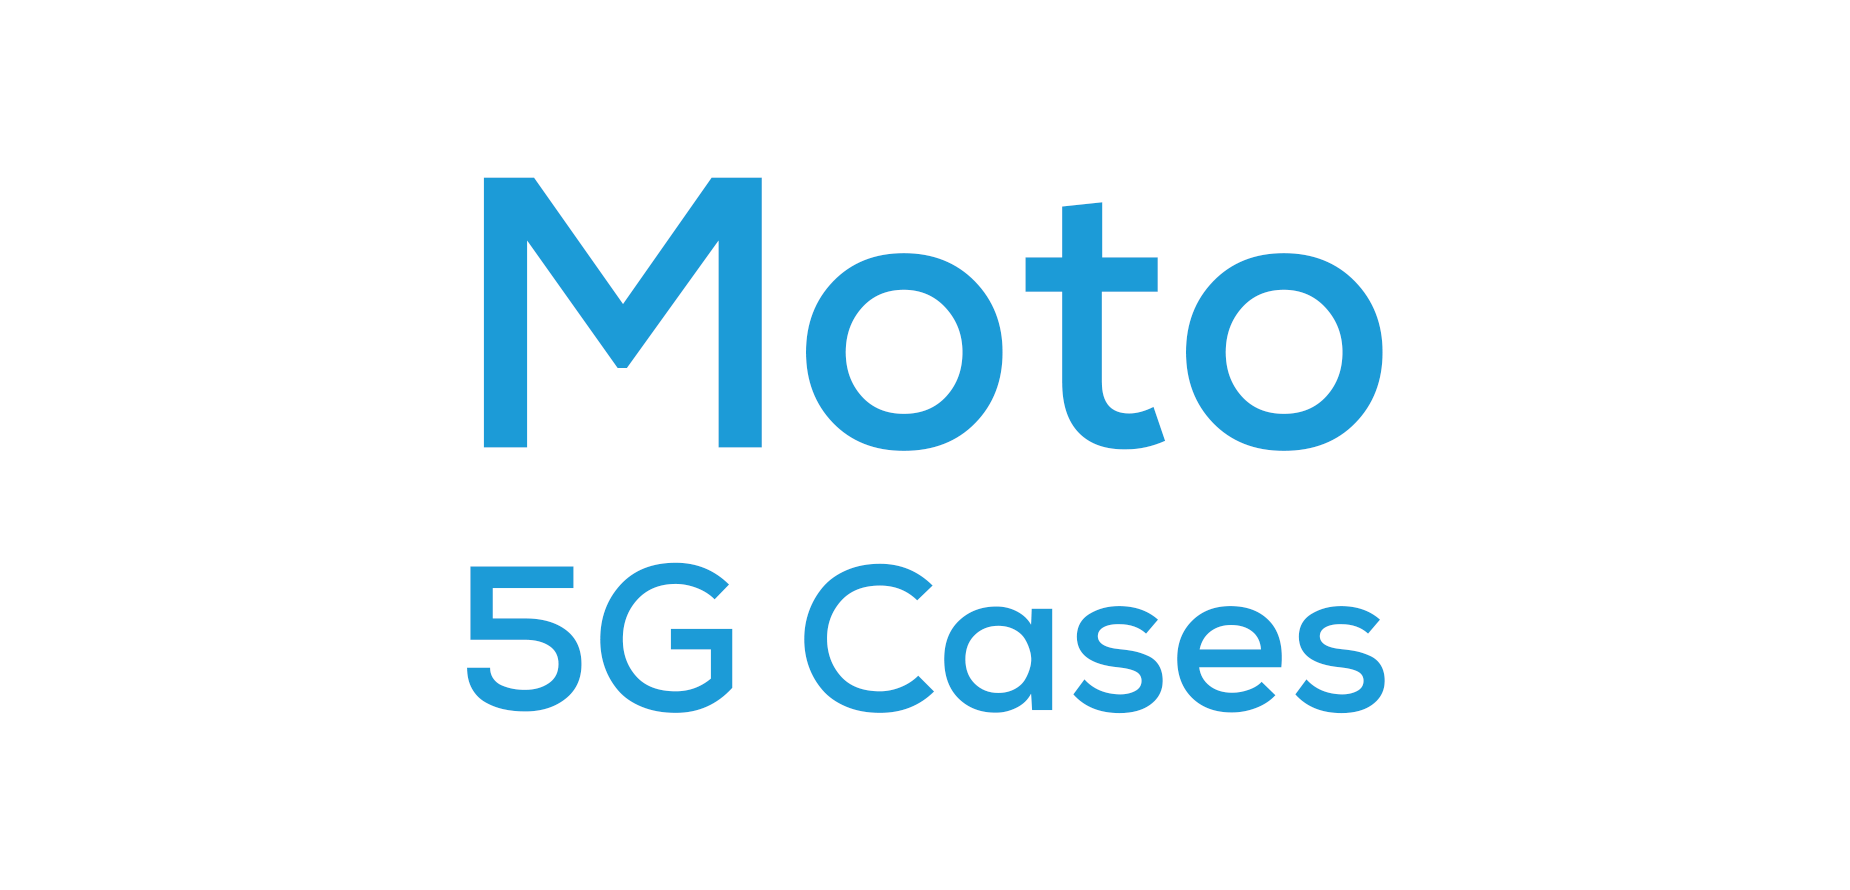 Moto G 5G Cases